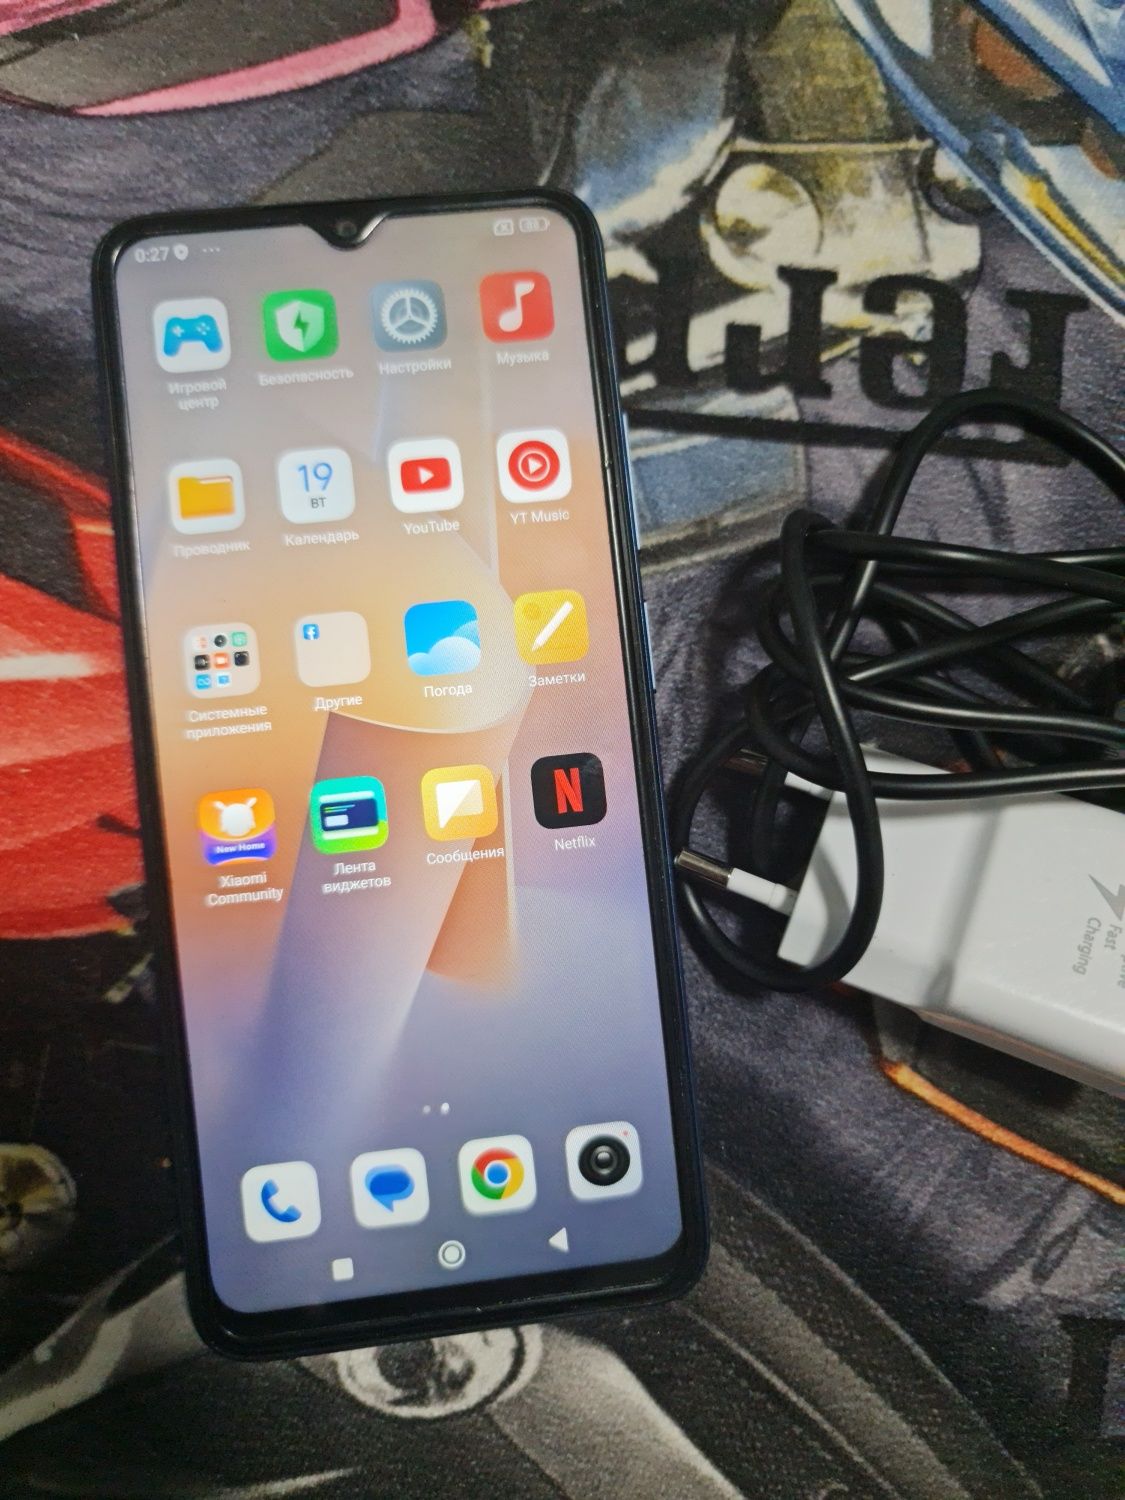 Xiaomi Redmi 12c